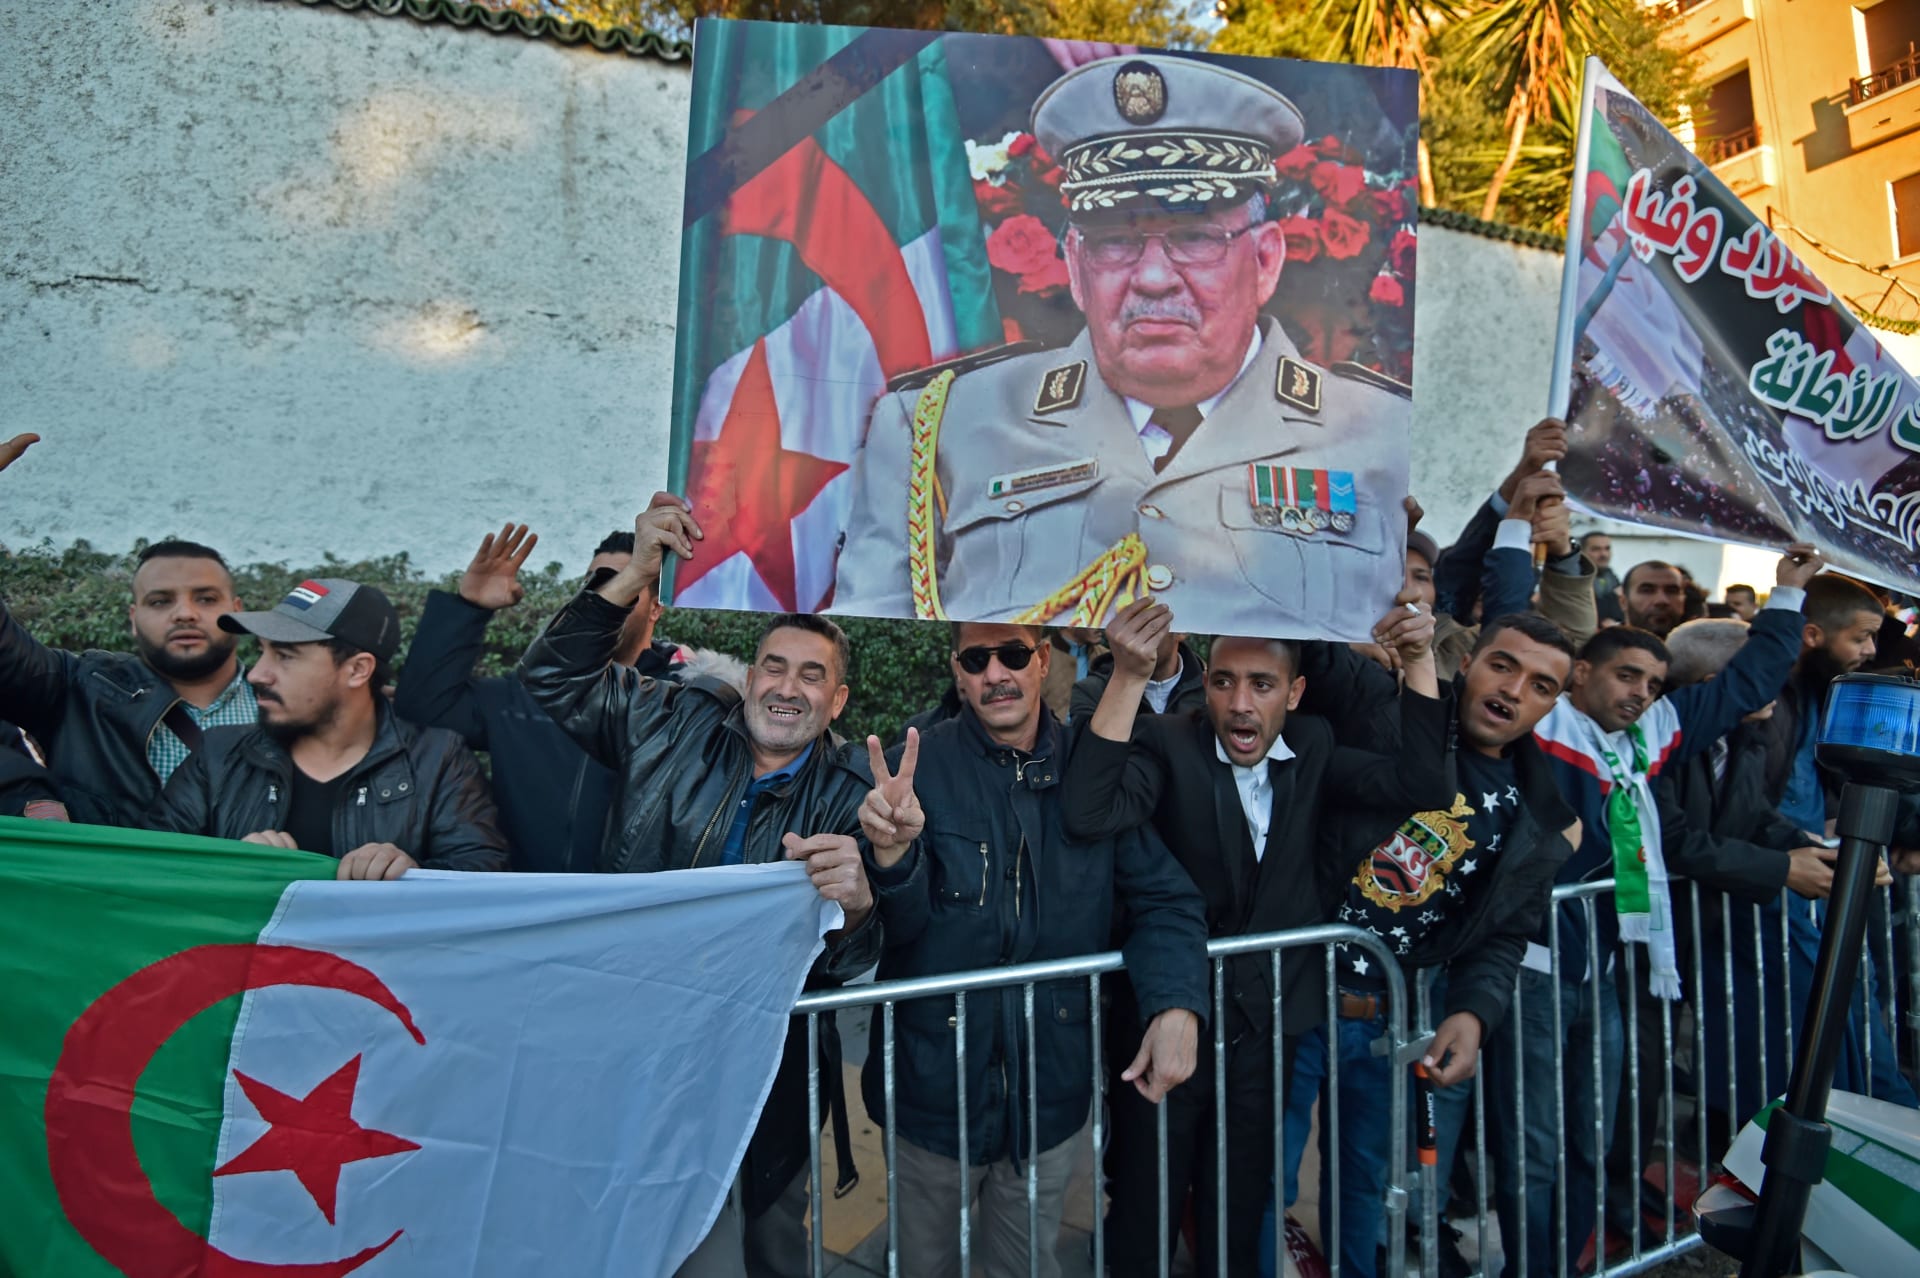  جنازة رئيس أركان الجيش الجزائري أحمد قايد صالح